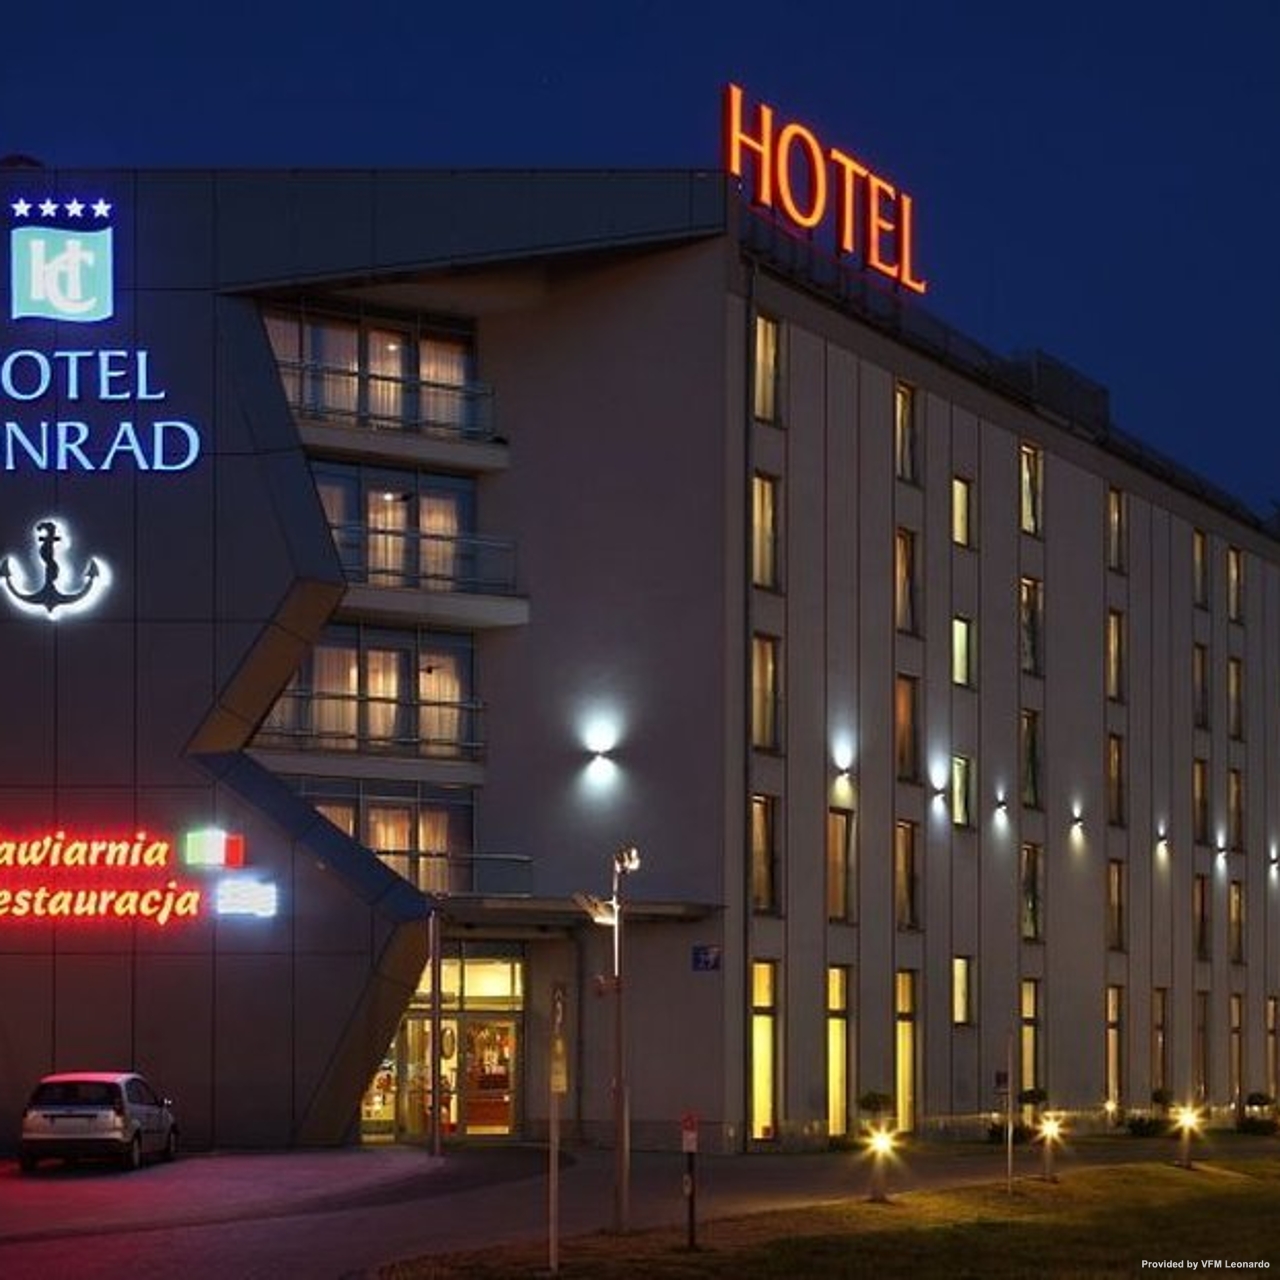 Hotel Conrad 4 Hrs Star Hotel In Krakow Lesser Poland Voivodeship